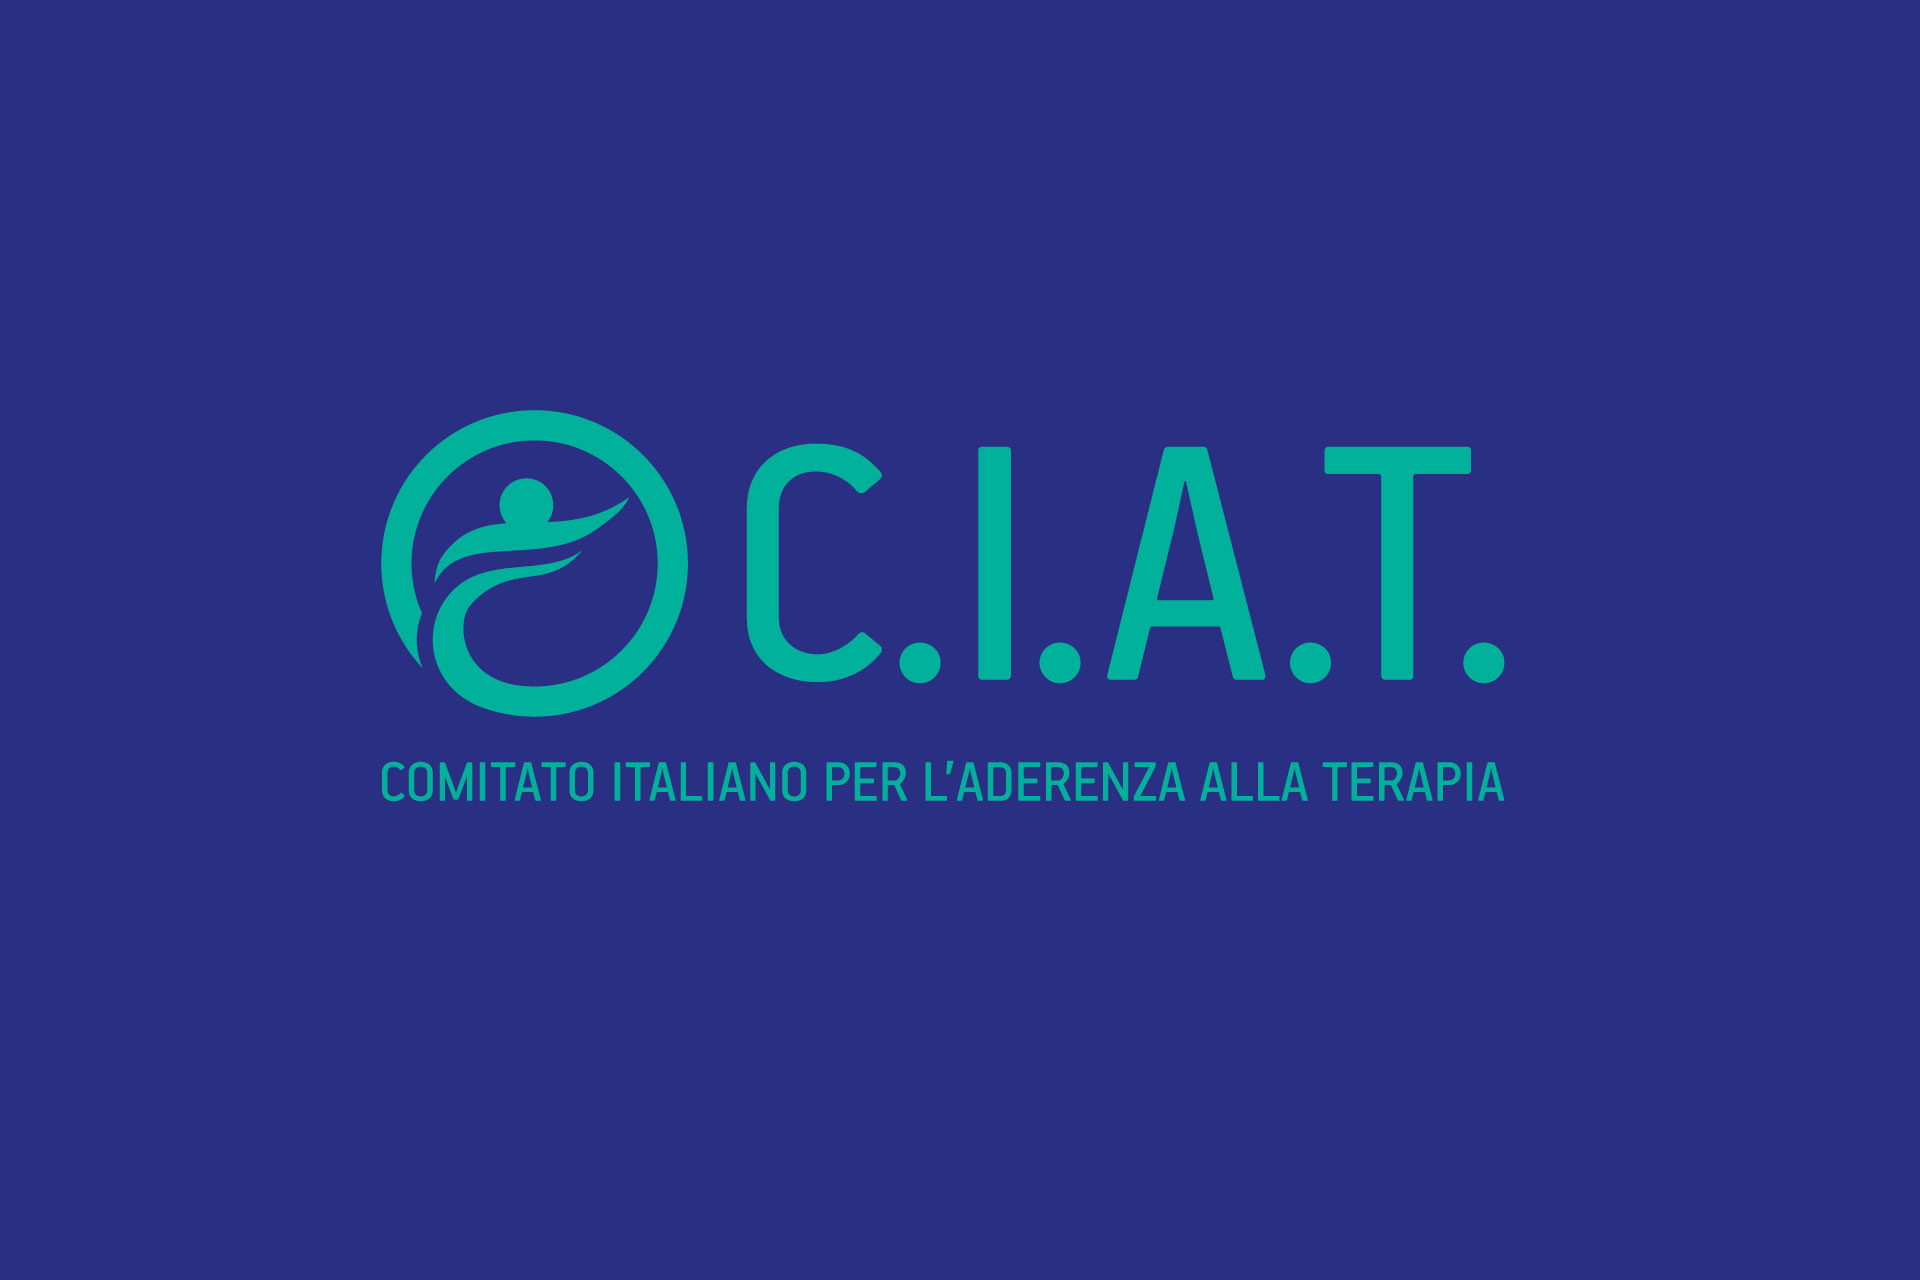 Tumori: “Radioligandi disponibili solo in 30 centri in Italia fondamentali i team multidisciplinari, ma siano regolamentati”